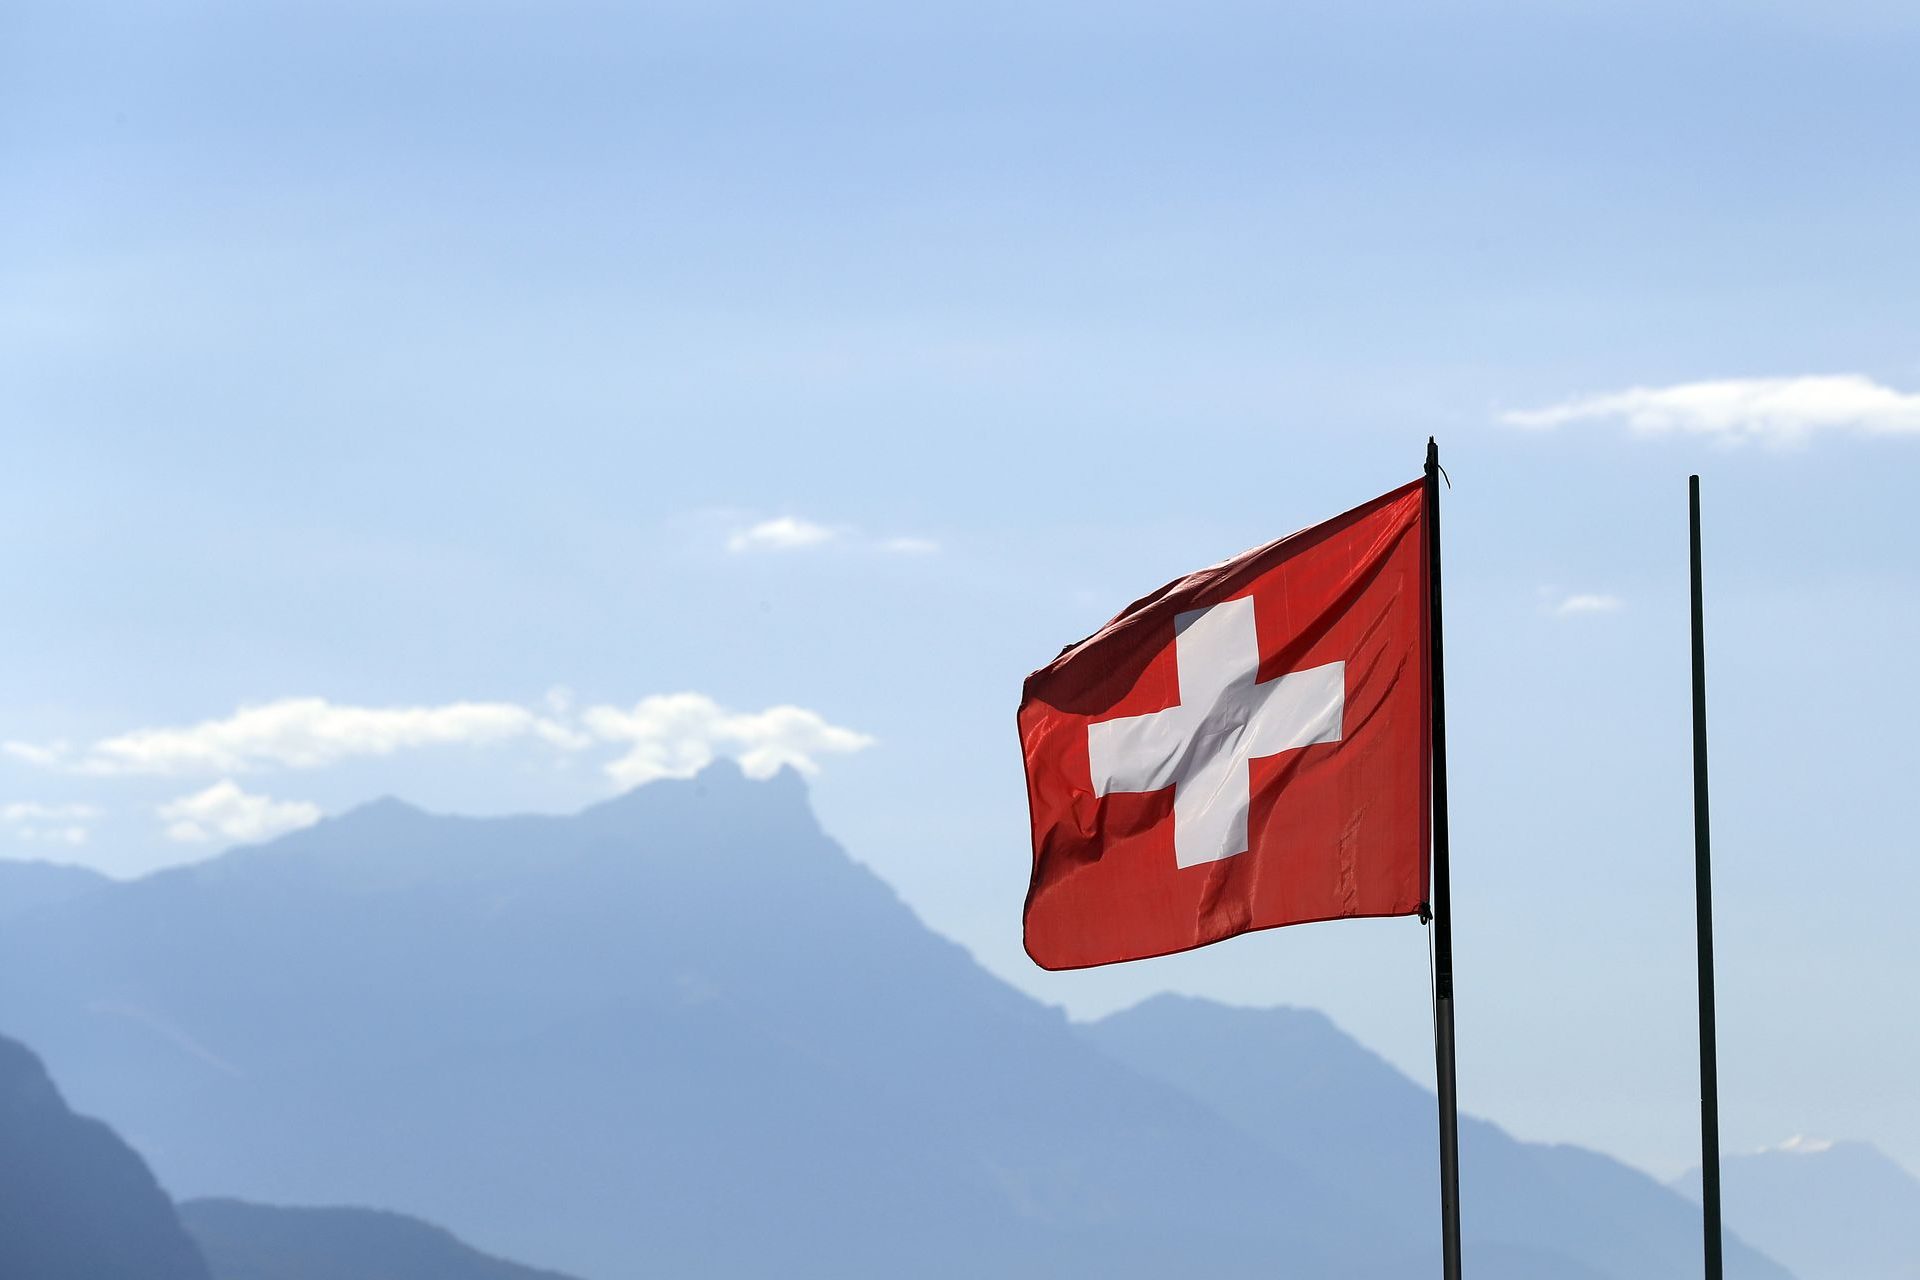 Switzerland: 84.38 years